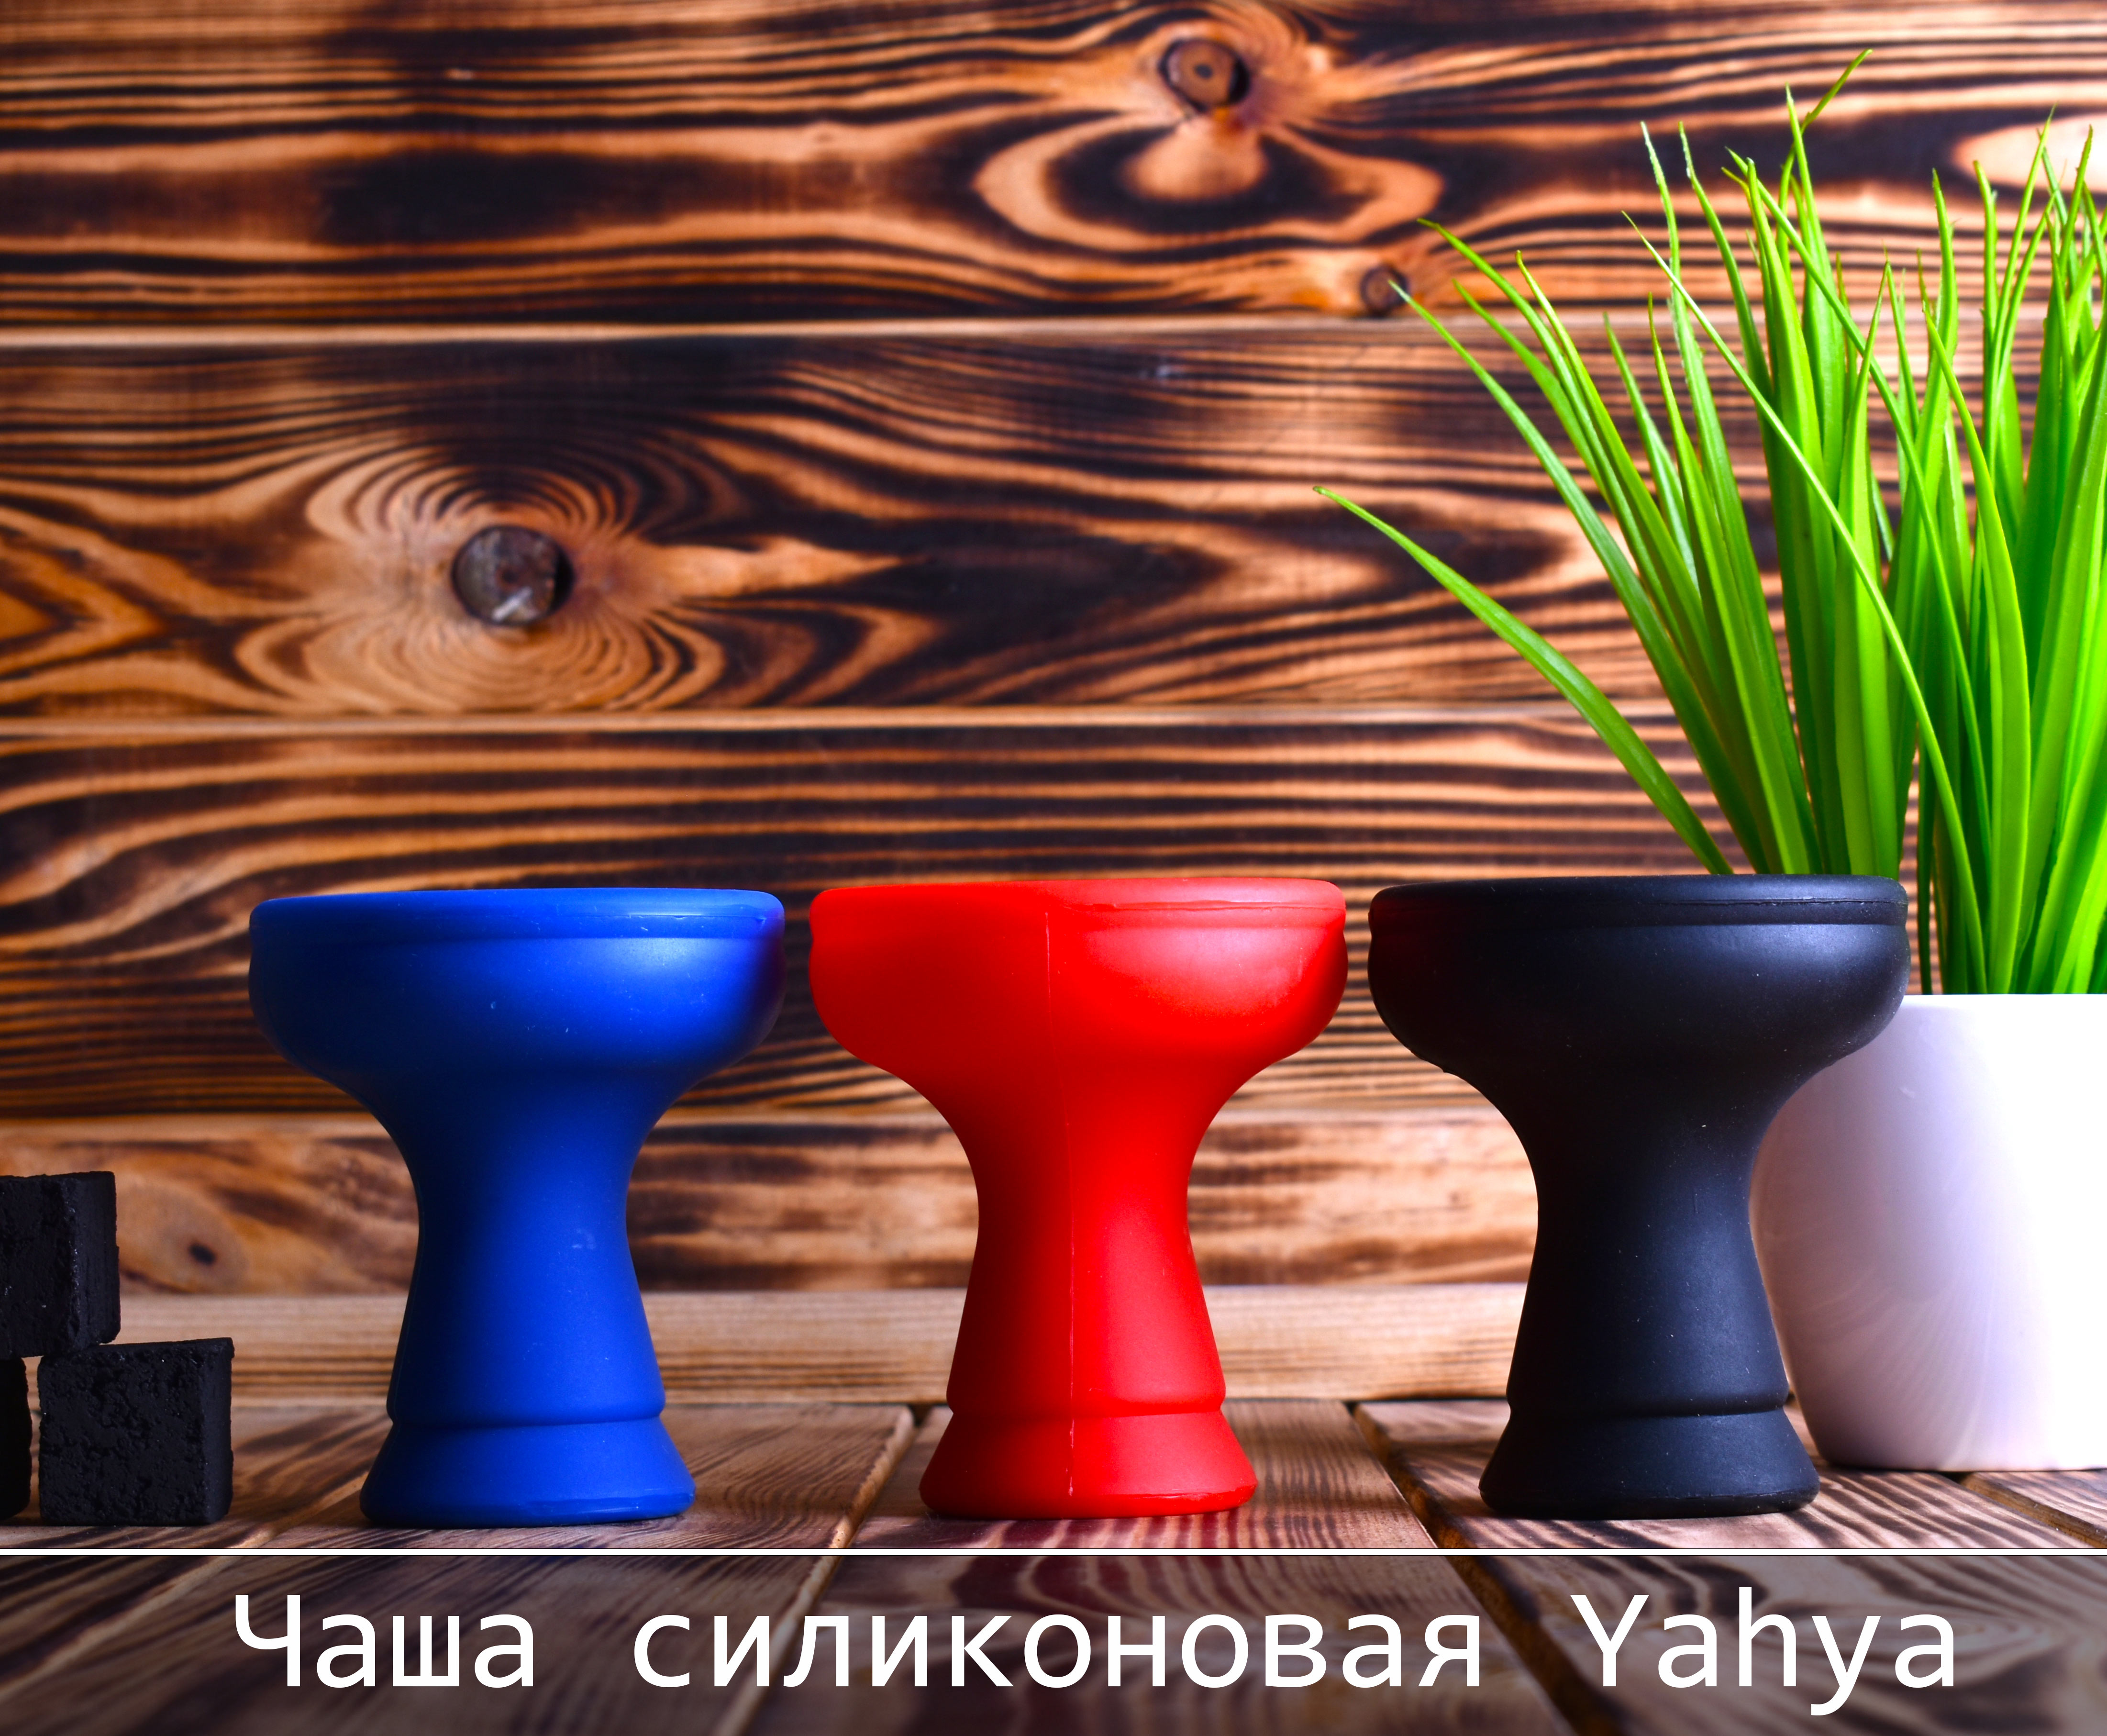 Чаша для кальяна силиконовая Yahya, фанел - фото 4 - Kalyanchik.ua